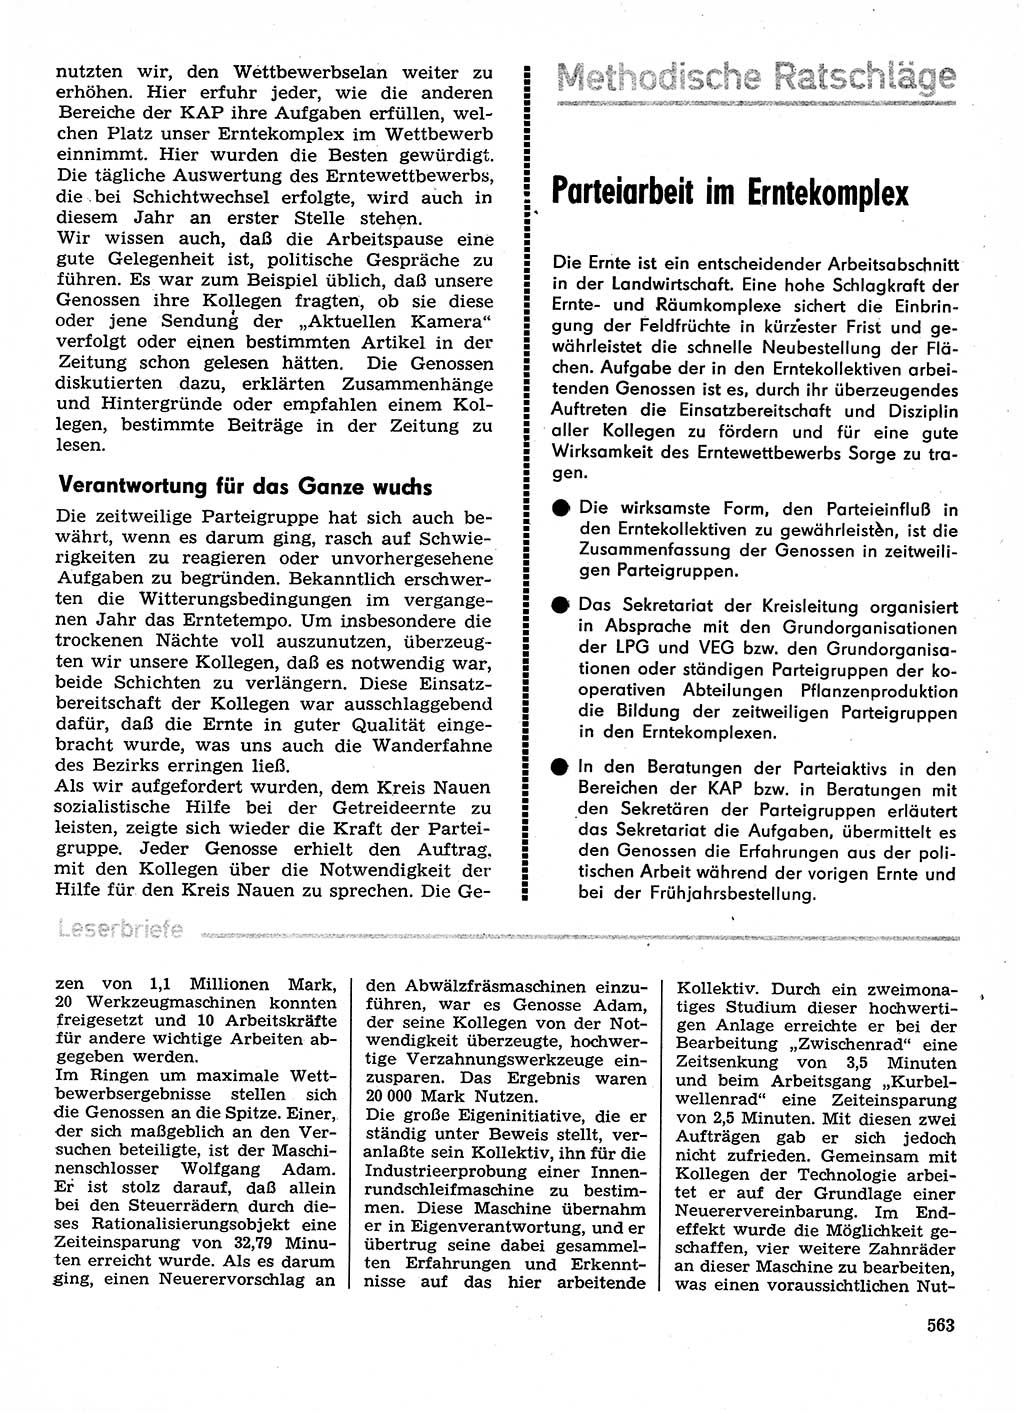 Neuer Weg (NW), Organ des Zentralkomitees (ZK) der SED (Sozialistische Einheitspartei Deutschlands) für Fragen des Parteilebens, 29. Jahrgang [Deutsche Demokratische Republik (DDR)] 1974, Seite 563 (NW ZK SED DDR 1974, S. 563)